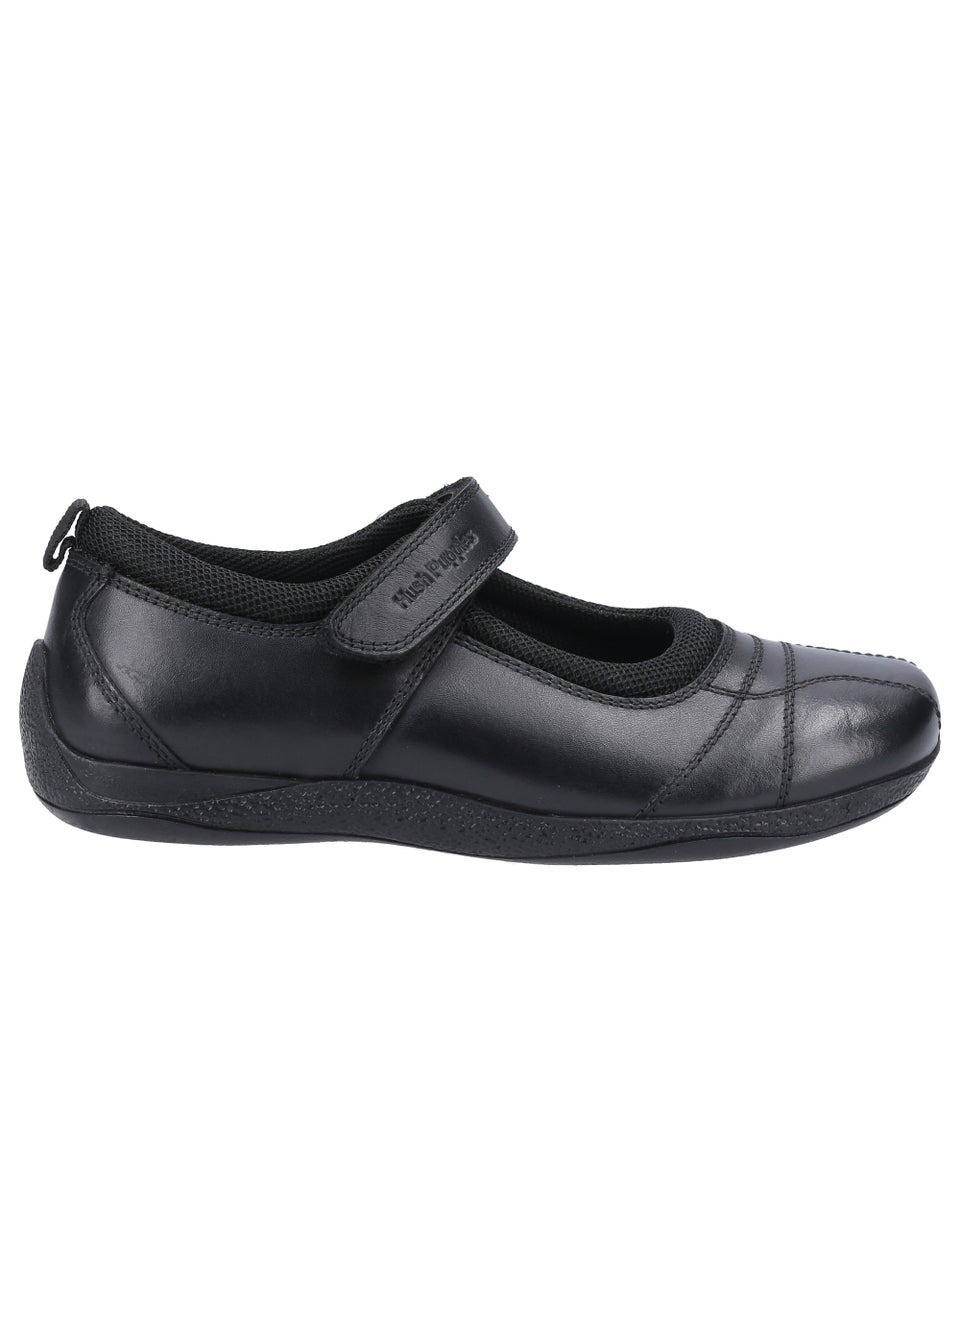 Черные школьные туфли для девочек Hush Puppies Junior (до 10 лет – от 2 лет) кроссовки hush puppies seventy8 black